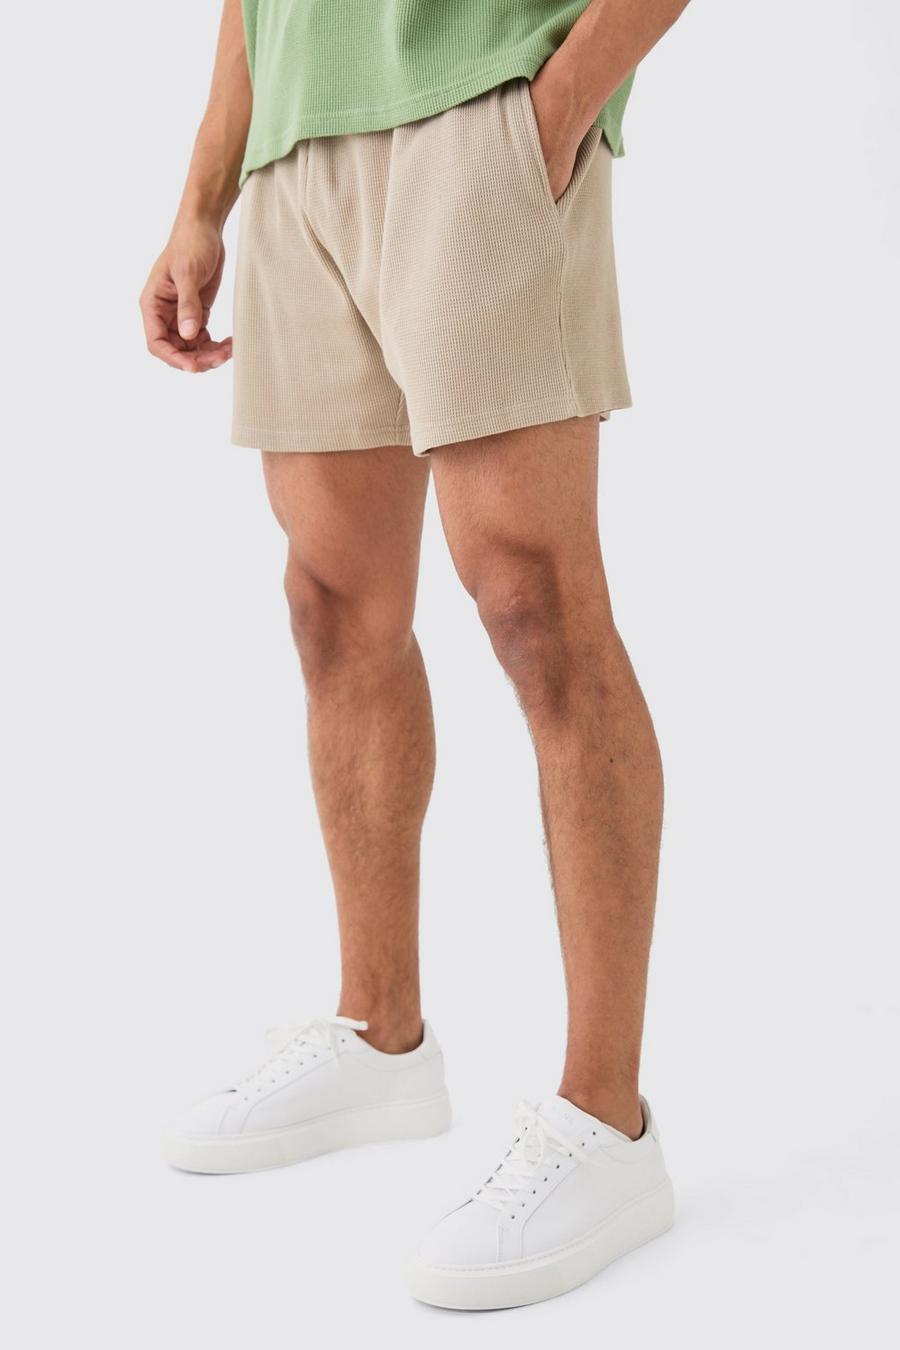 Lockere Shorts in Waffeloptik, Taupe